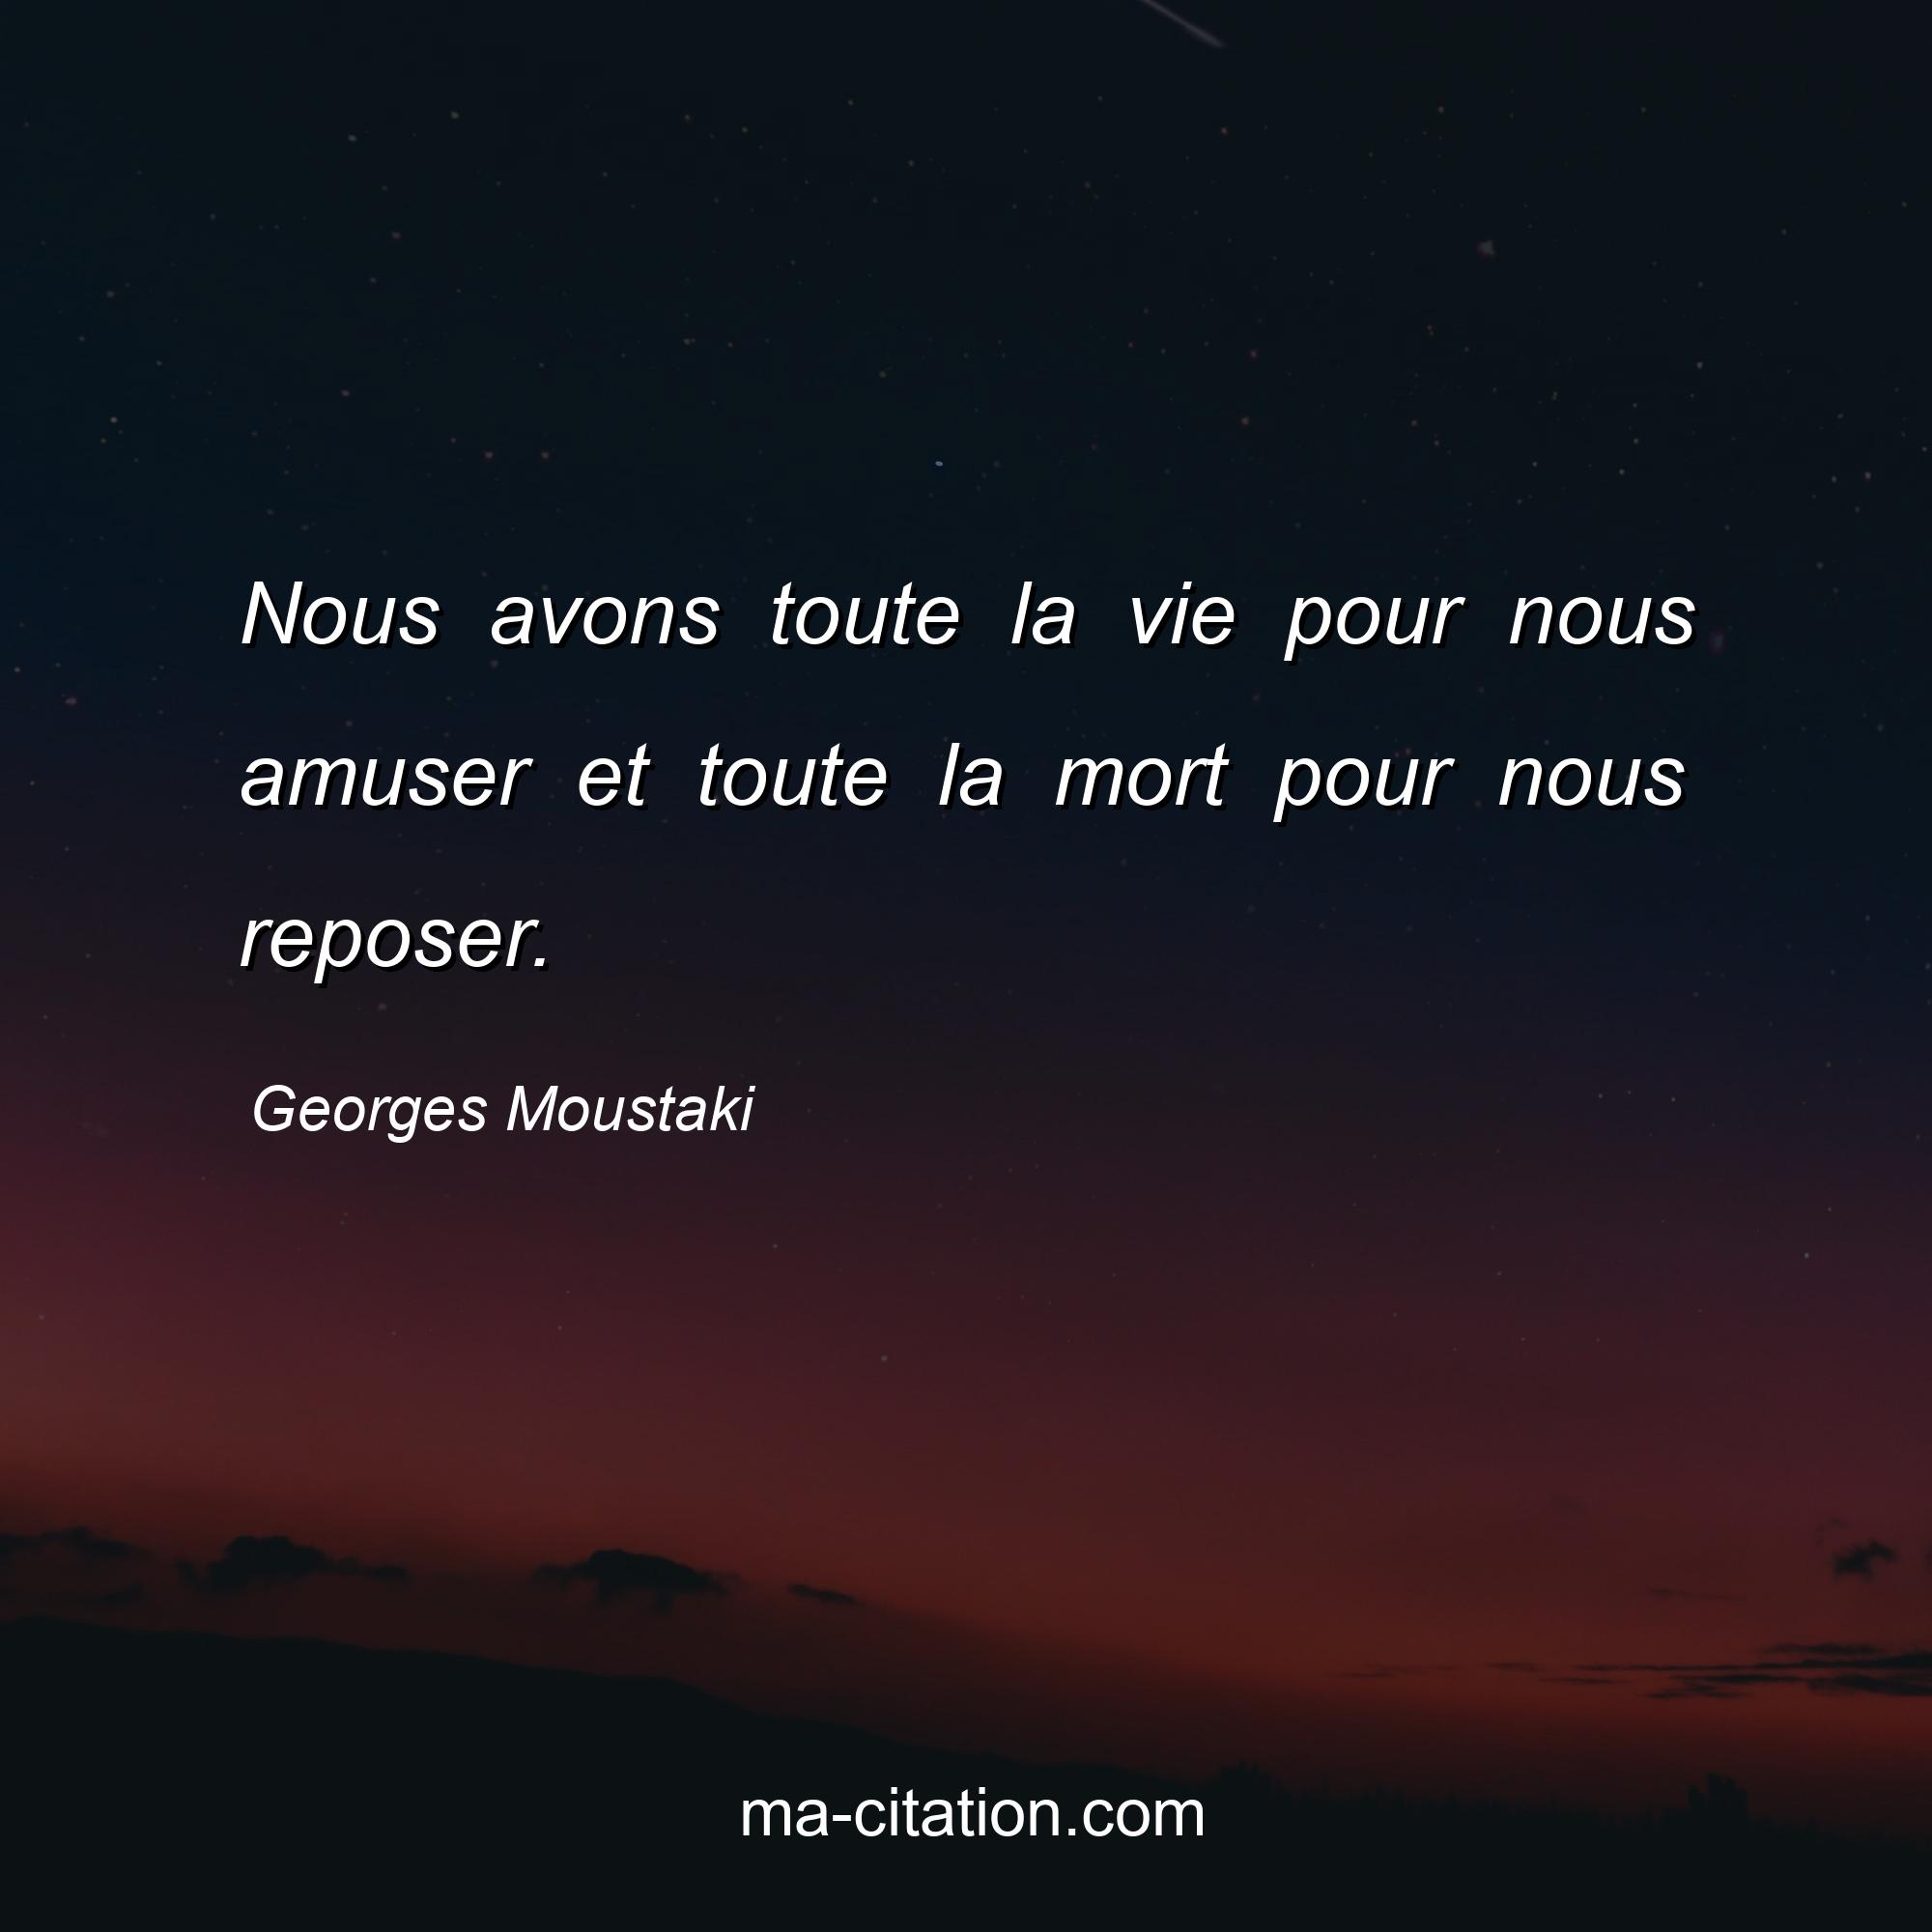 Georges Moustaki : Nous avons toute la vie pour nous amuser et toute la mort pour nous reposer.